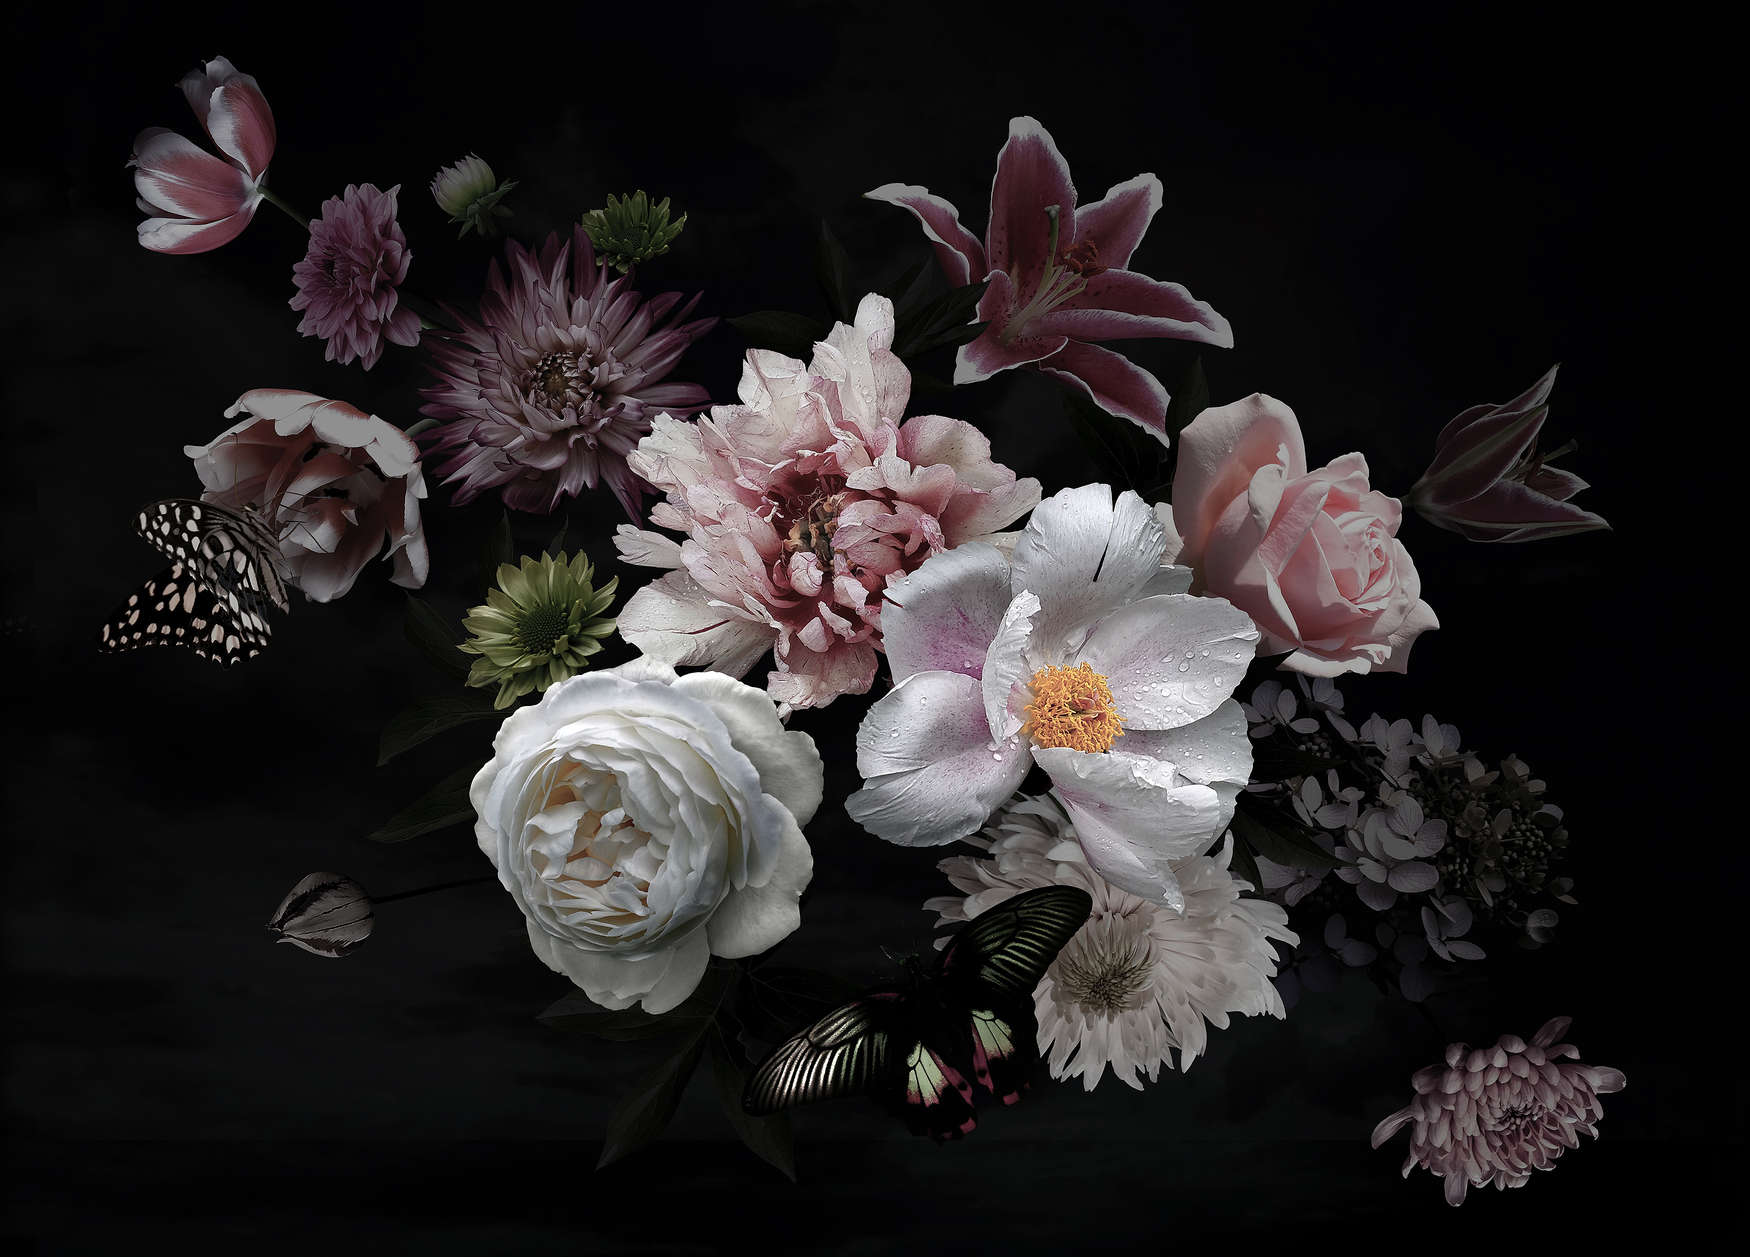             Papel pintado Flores diversas con mariposa - Negro, Rosa, Blanco
        